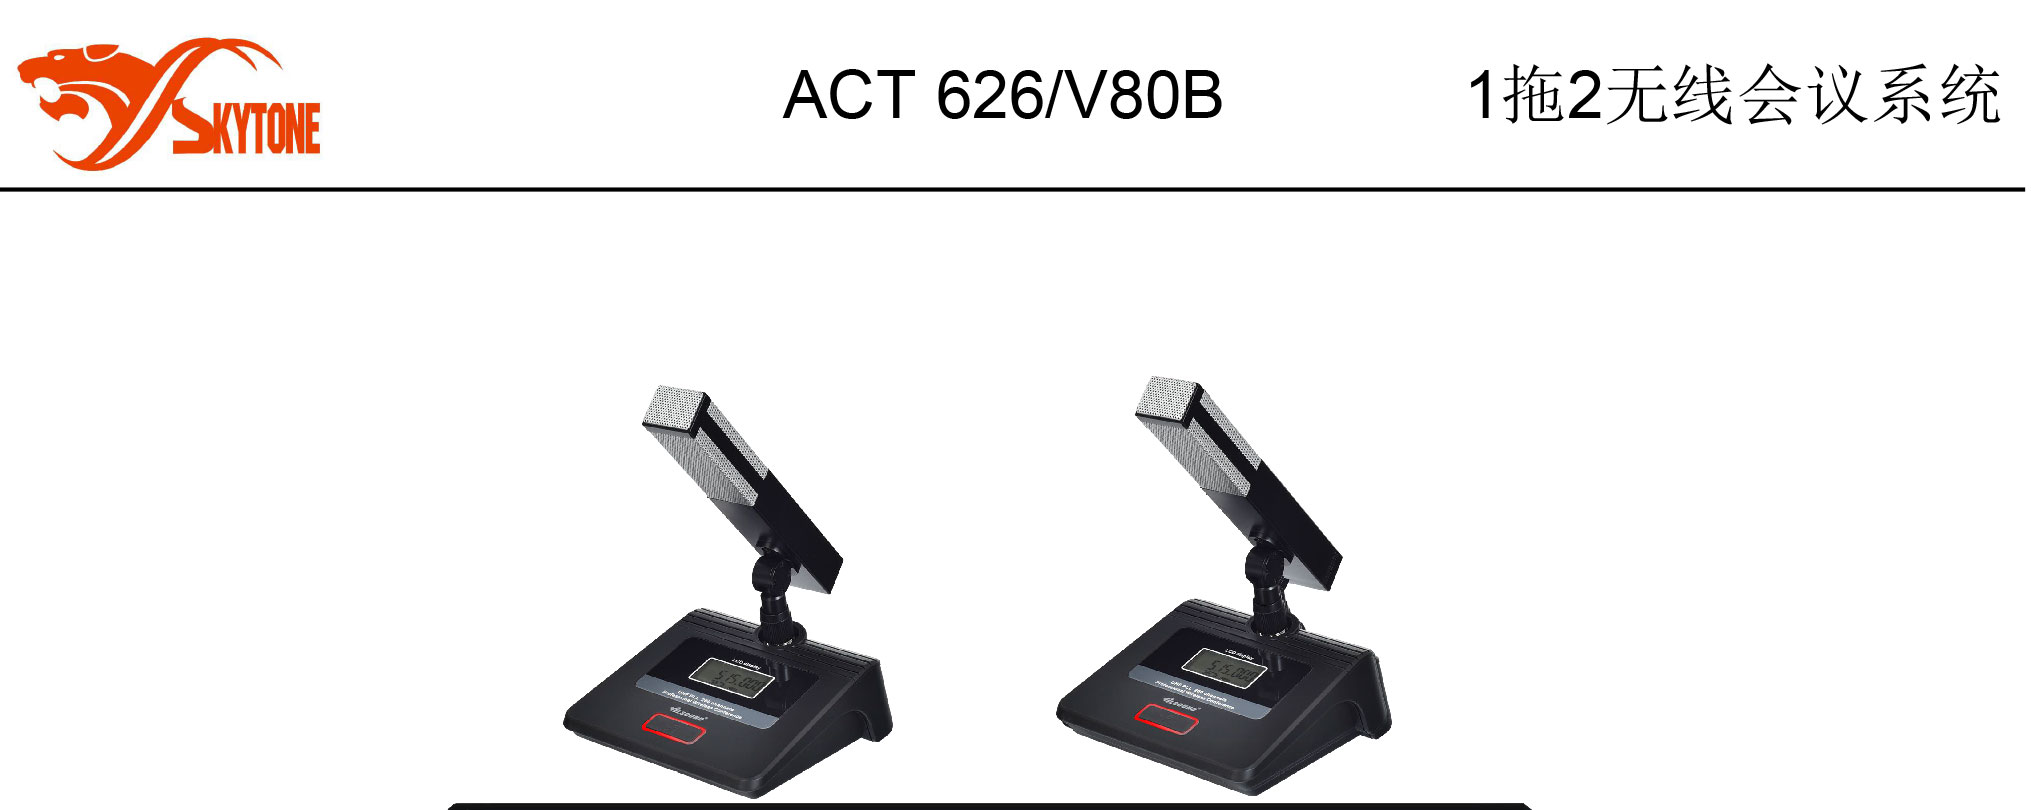 ACT-626-V80B-1_01.jpg